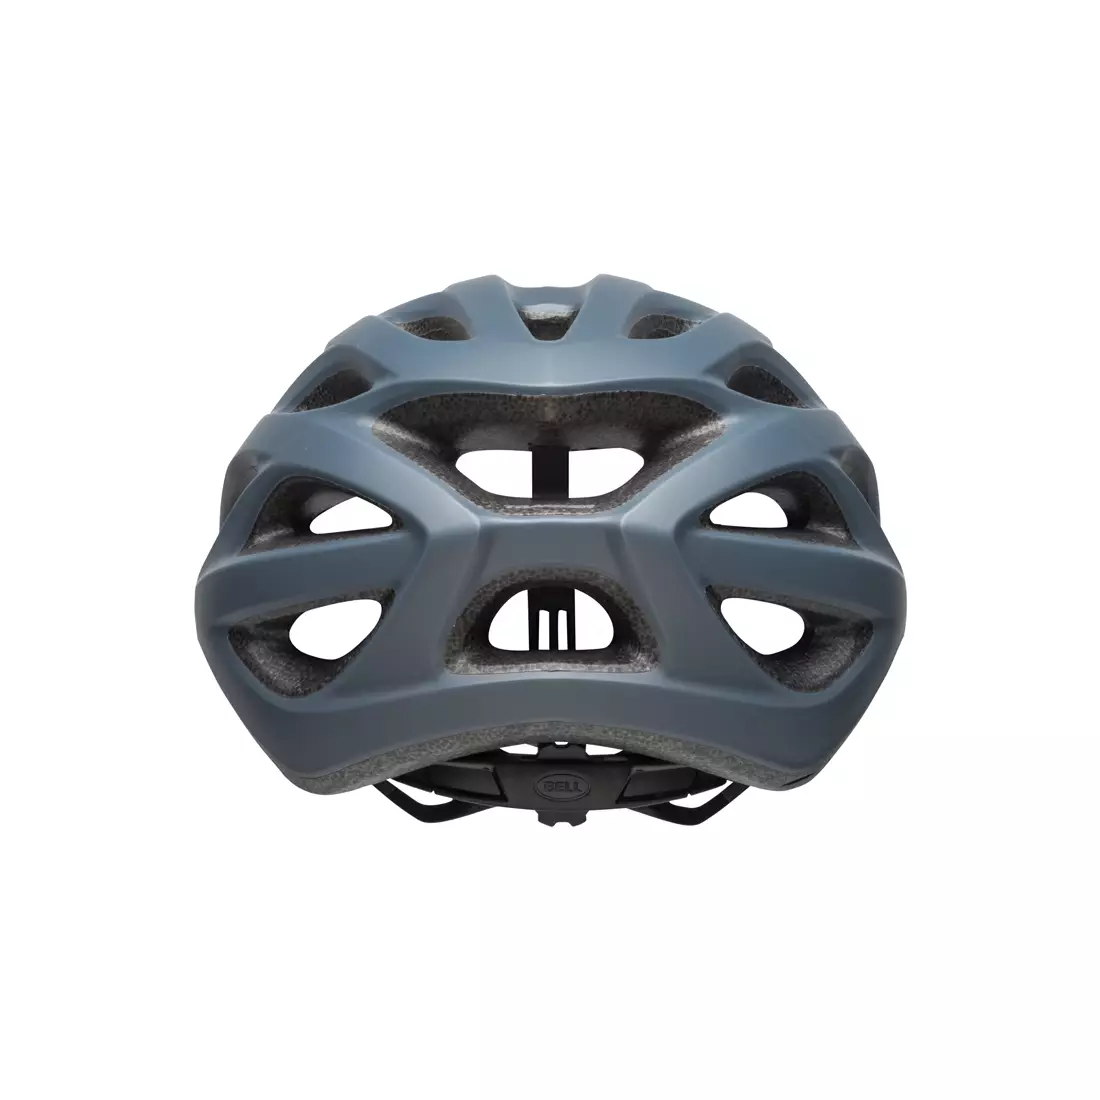 Bicycle helmet mtb BELL TRACKER matte lead 